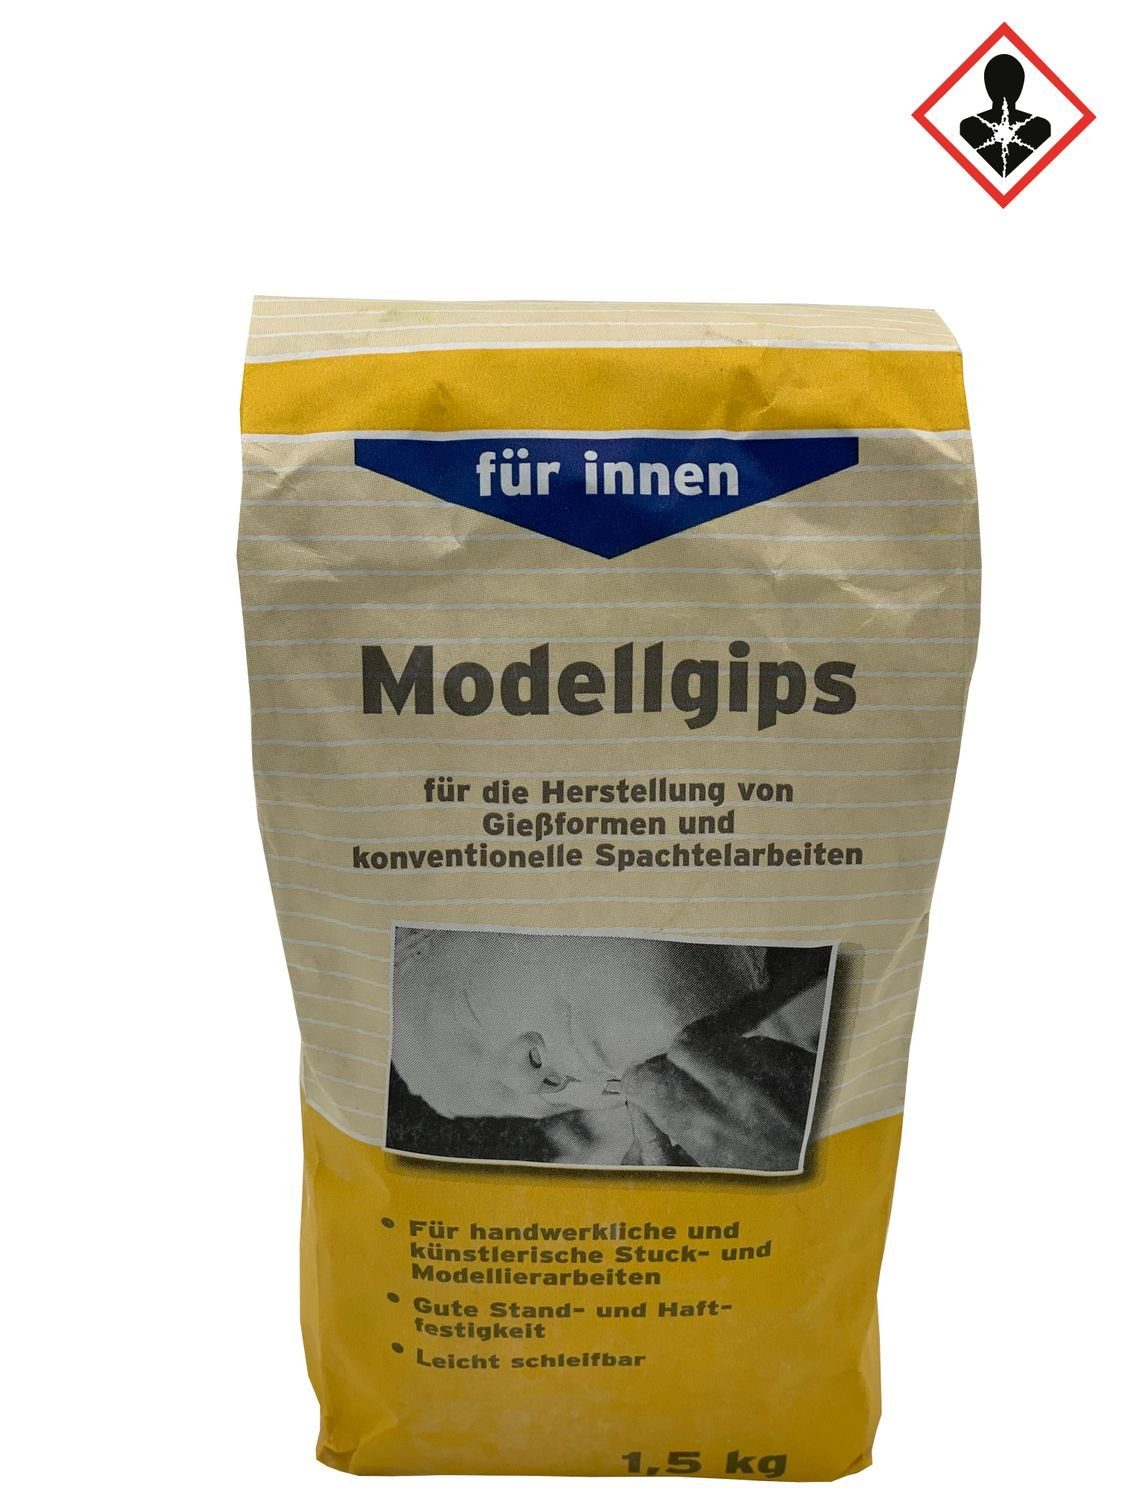 Rühl AG & Co. Chemische Fabrik KG Fugenfueller 1,5 kg Rühl Modellgips Spachteln Modellieren Gießformen Innenmasse Gie